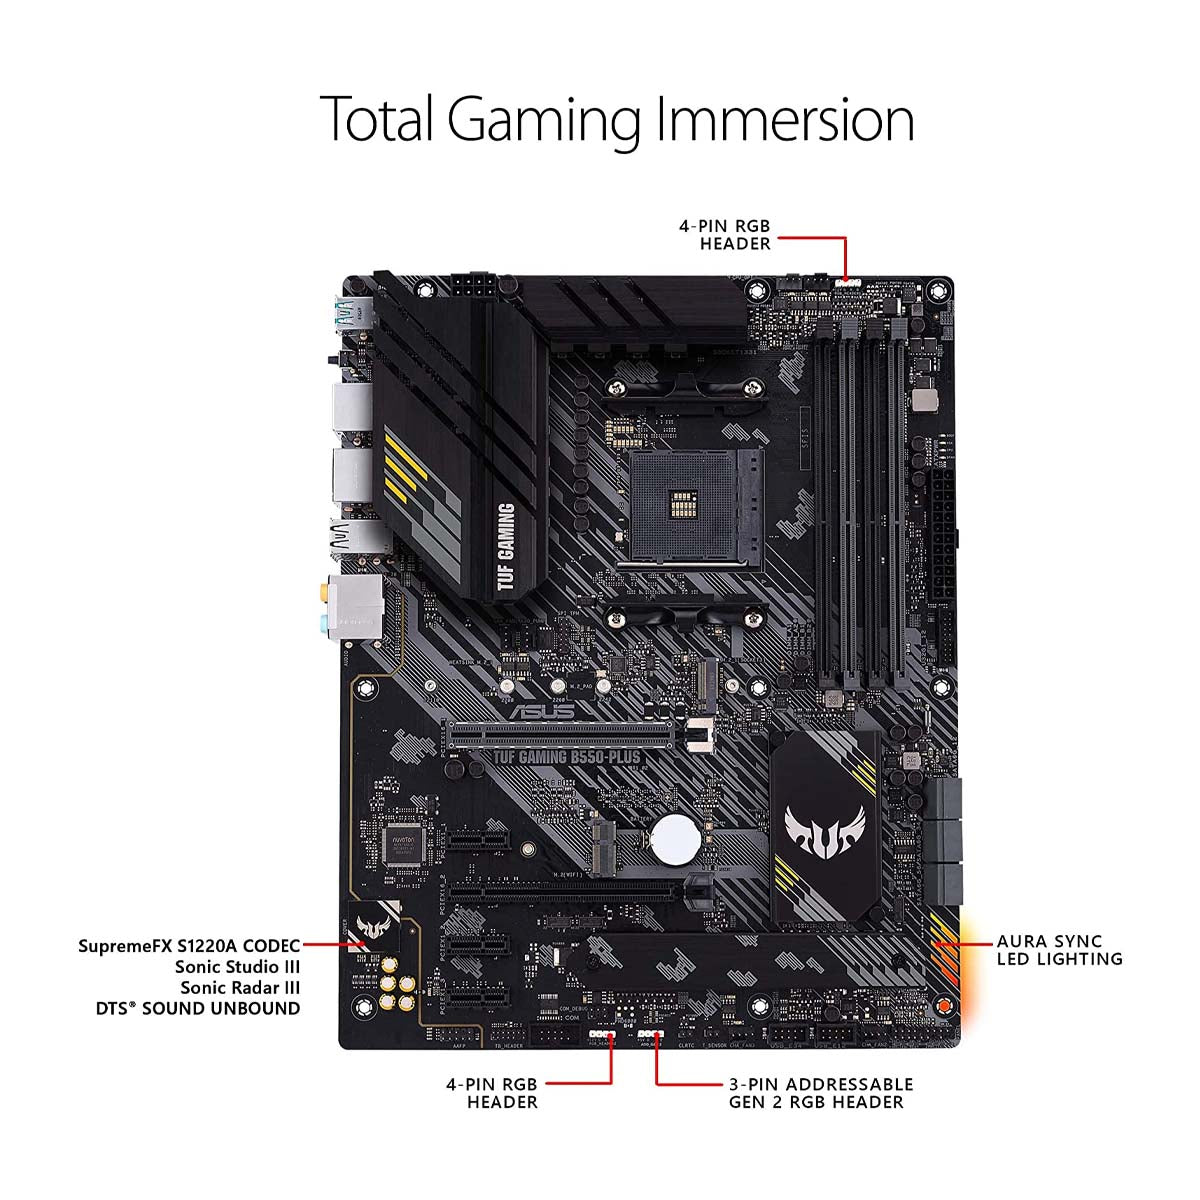 Asus B550 TUF गेमिंग B550-Plus AMD AM4 ATX गेमिंग मदरबोर्ड PCIe 4.0 और थंडरबोल्ट 3 के साथ